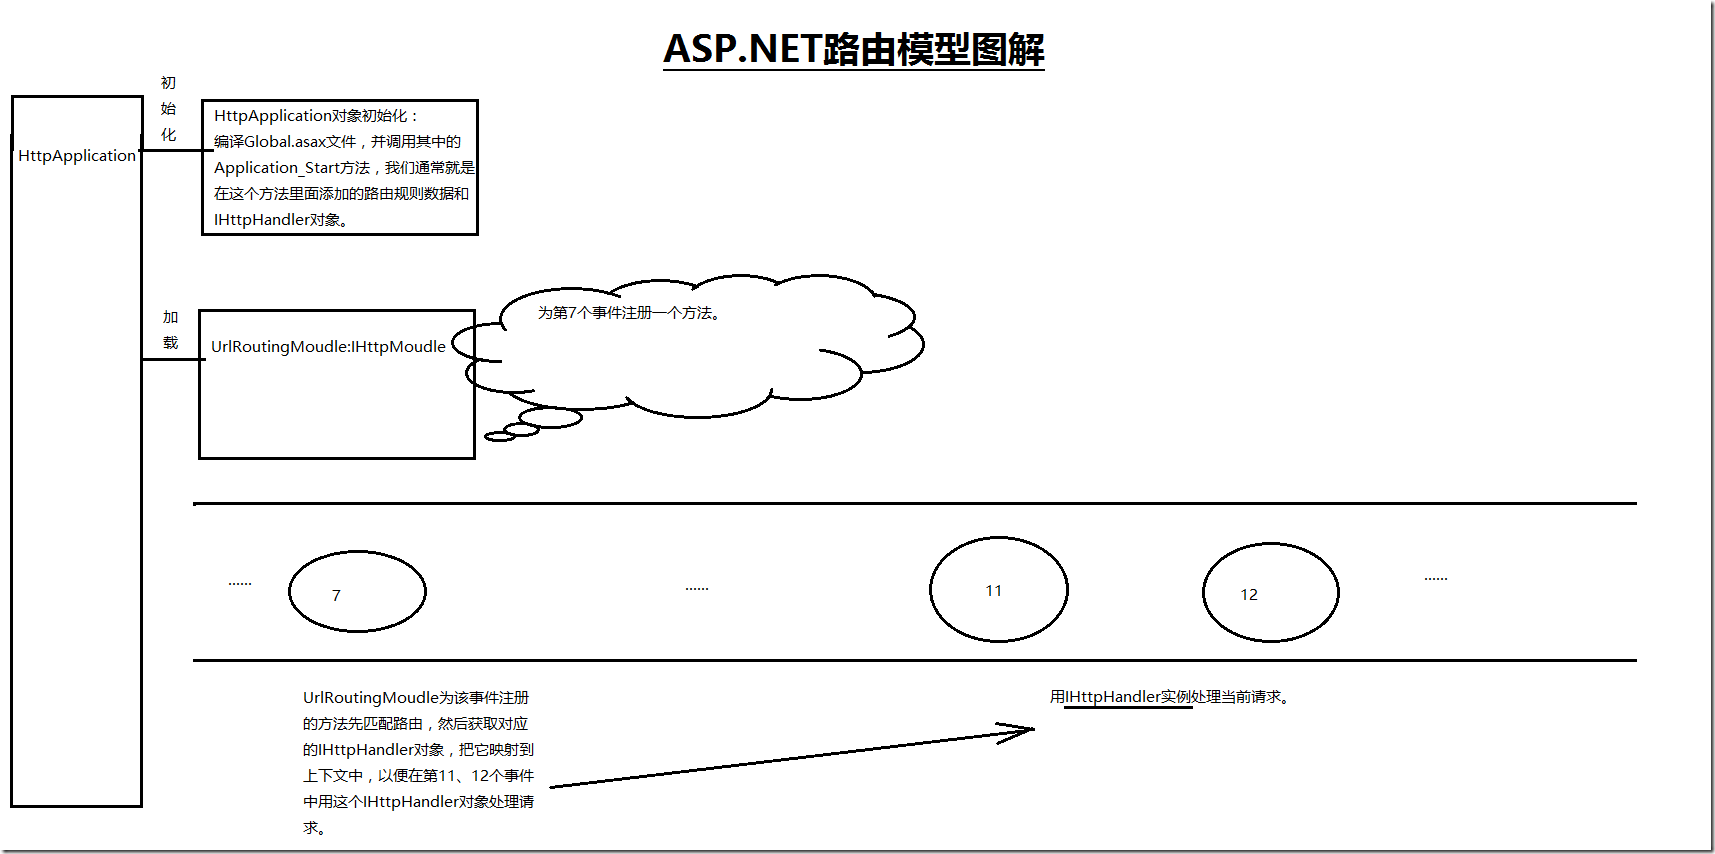 ASP.NET中路由模型的工作原理是什么